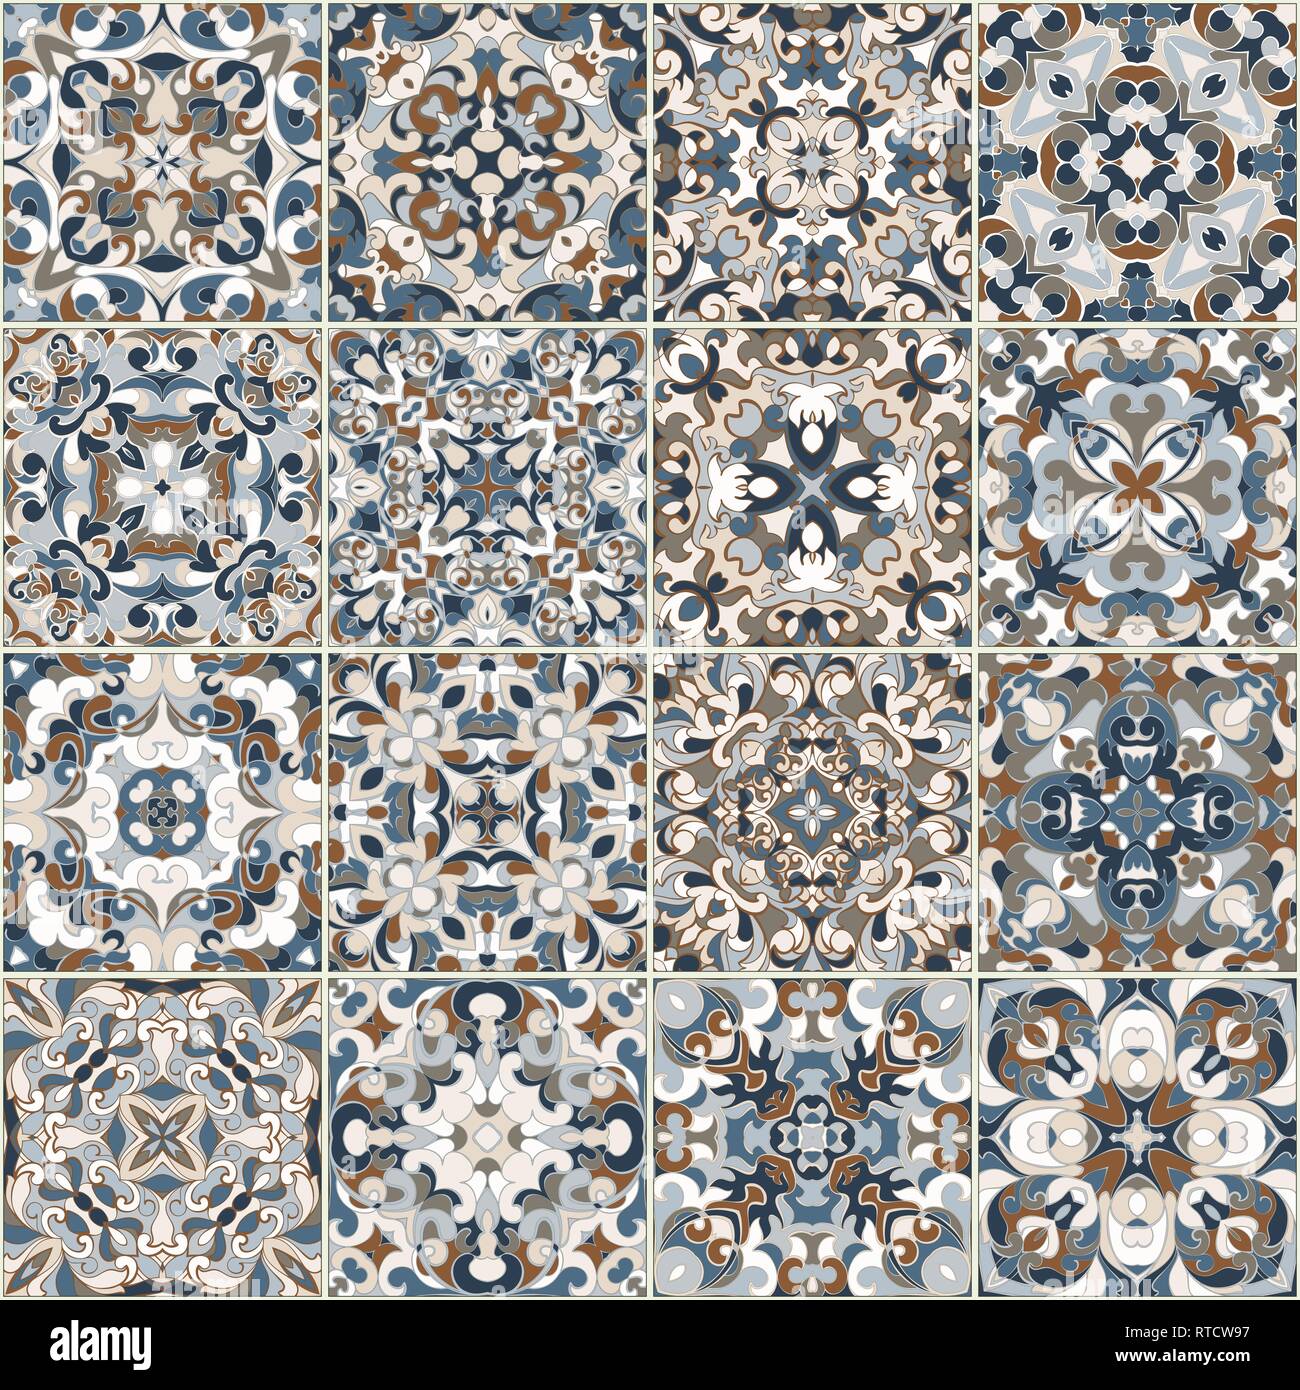 Eine Sammlung von Keramikfliesen in Blau retro Farben. Eine Reihe von quadratischen Muster im ethnischen Stil. Vector Illustration. Stock Vektor